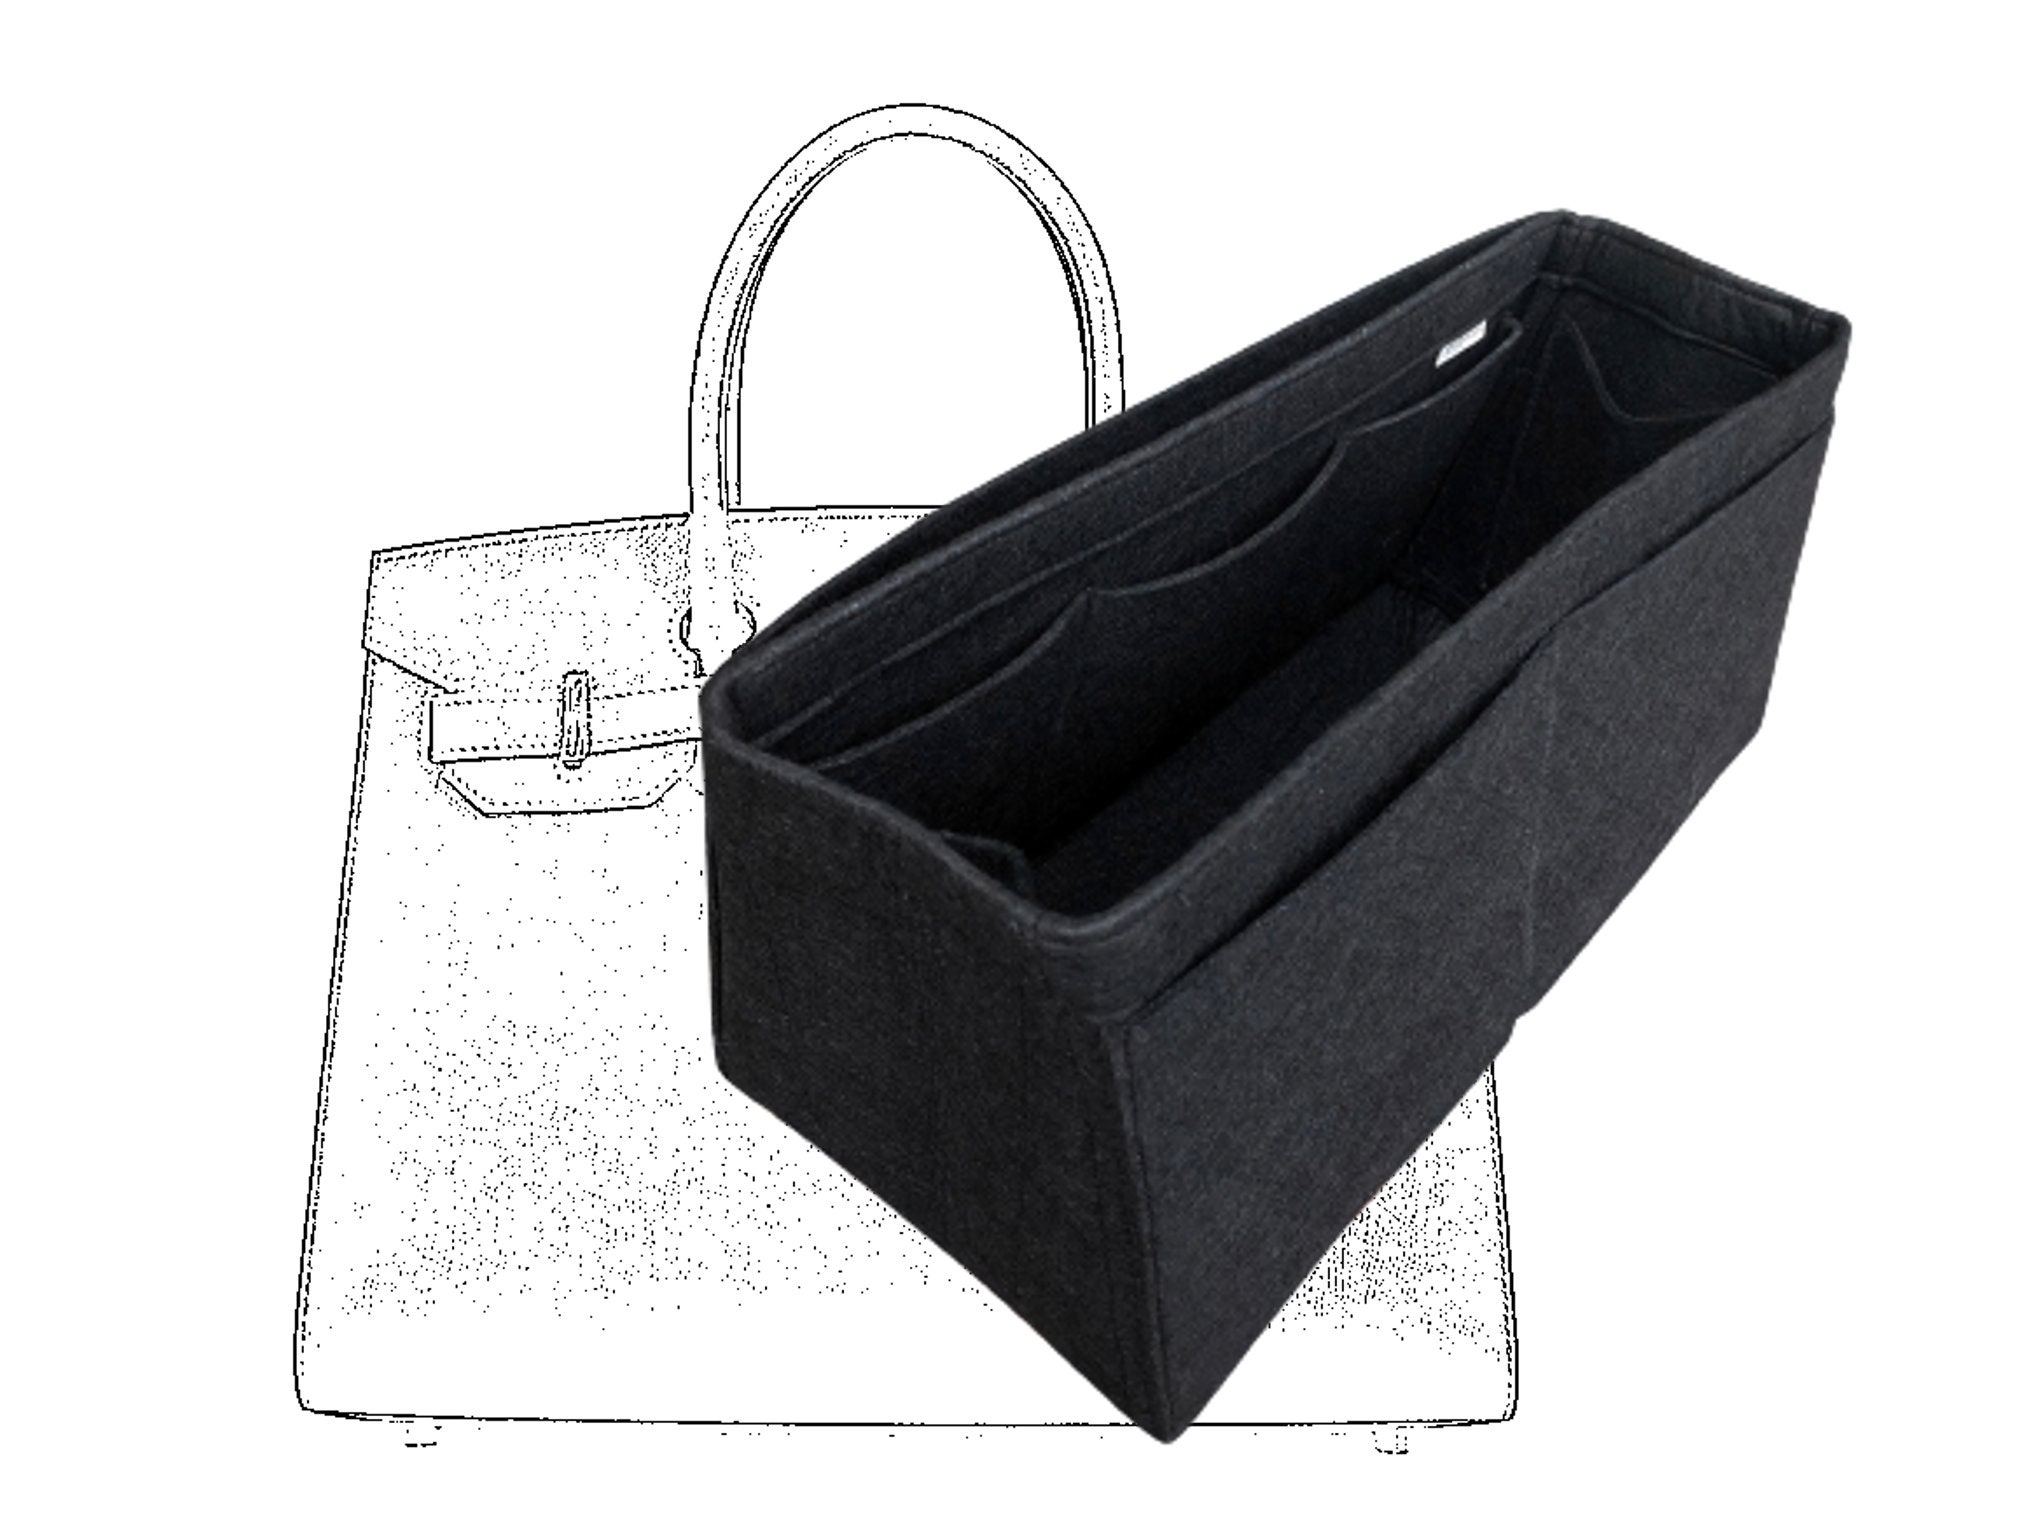 The Birkin isnâ?Tt just a handbag: itâ?Ts a Pandoraâ?Ts box, stuffed with  primal desire